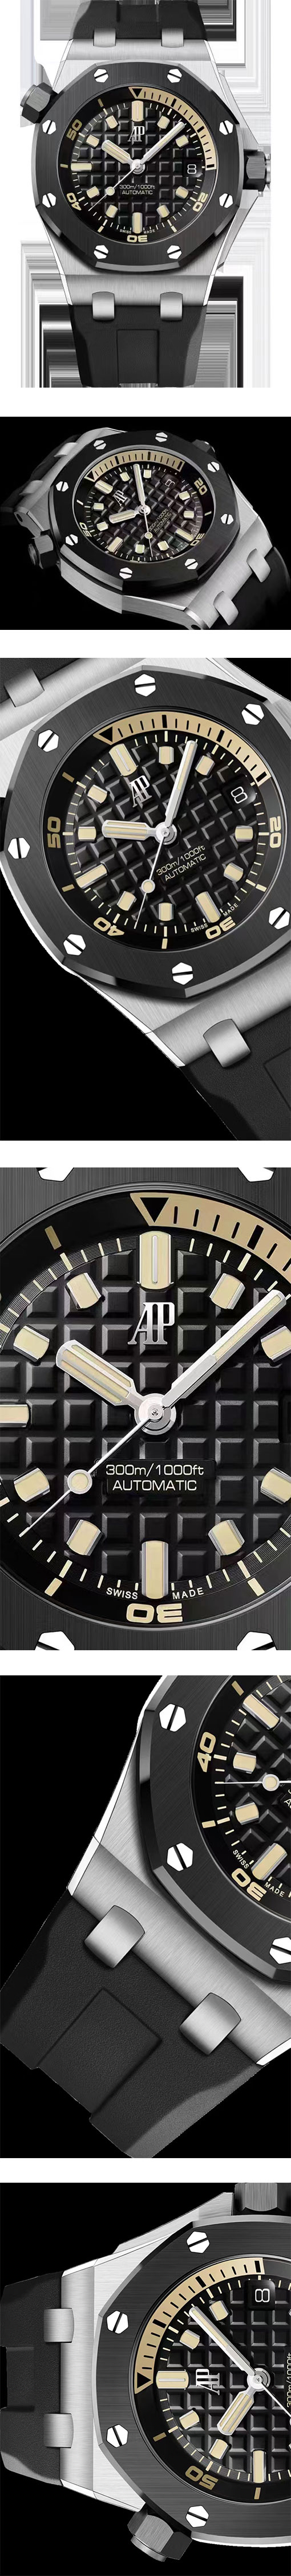 メンズスーパーコピー時計 オーデマピゲ ロイヤルオーク オフショア ダイバー 15720CN.OO.A002CA.01 【BF新型発売】